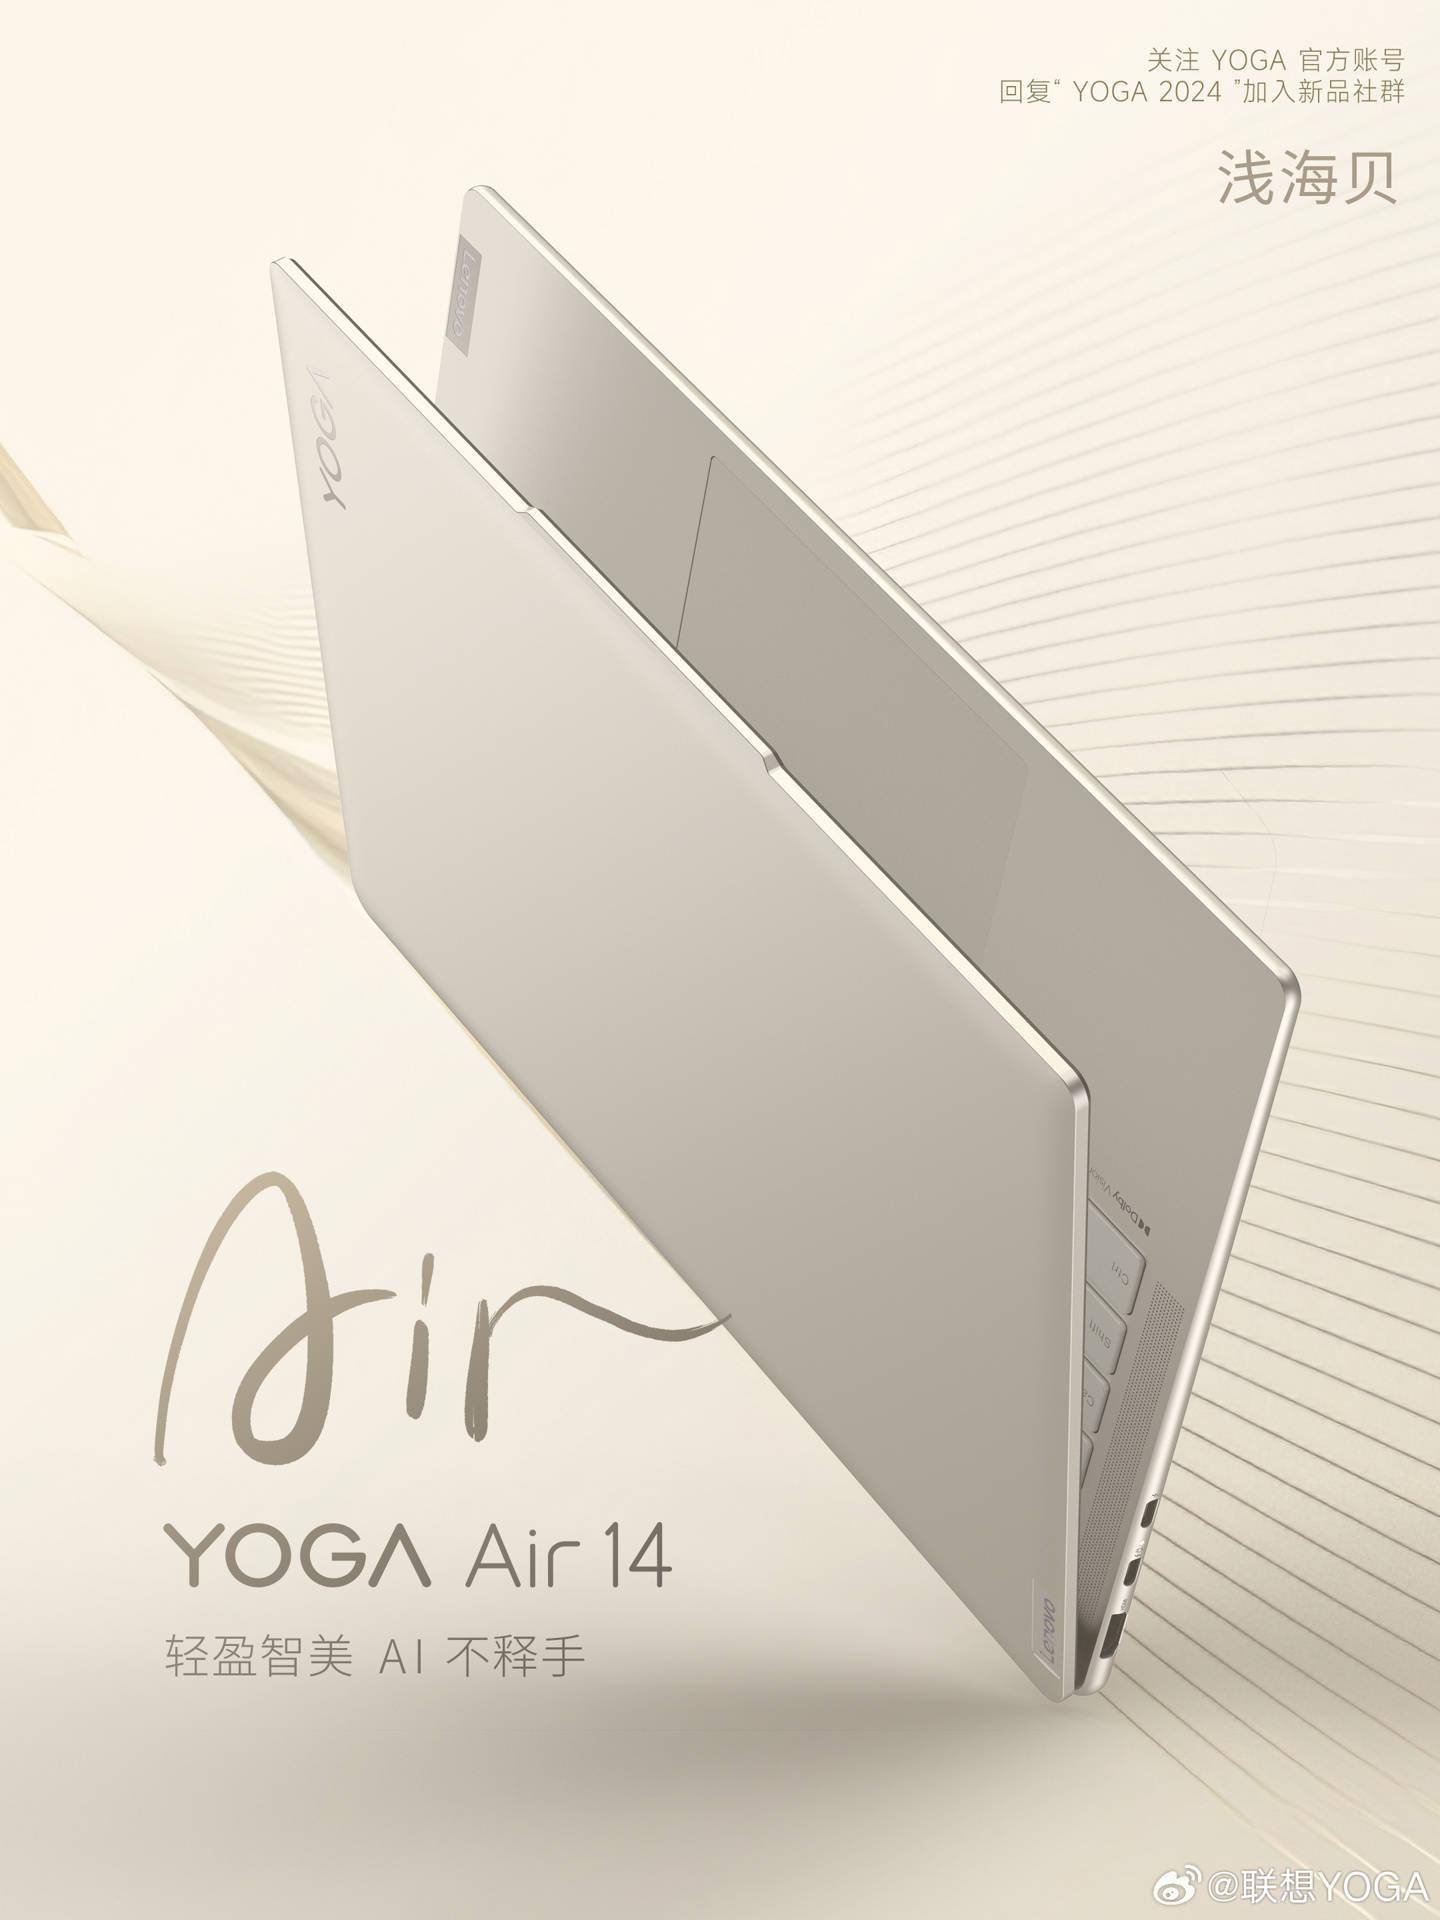 联想预告YOGA Air 14 2024笔记本浅海贝版 将于4月18日发布